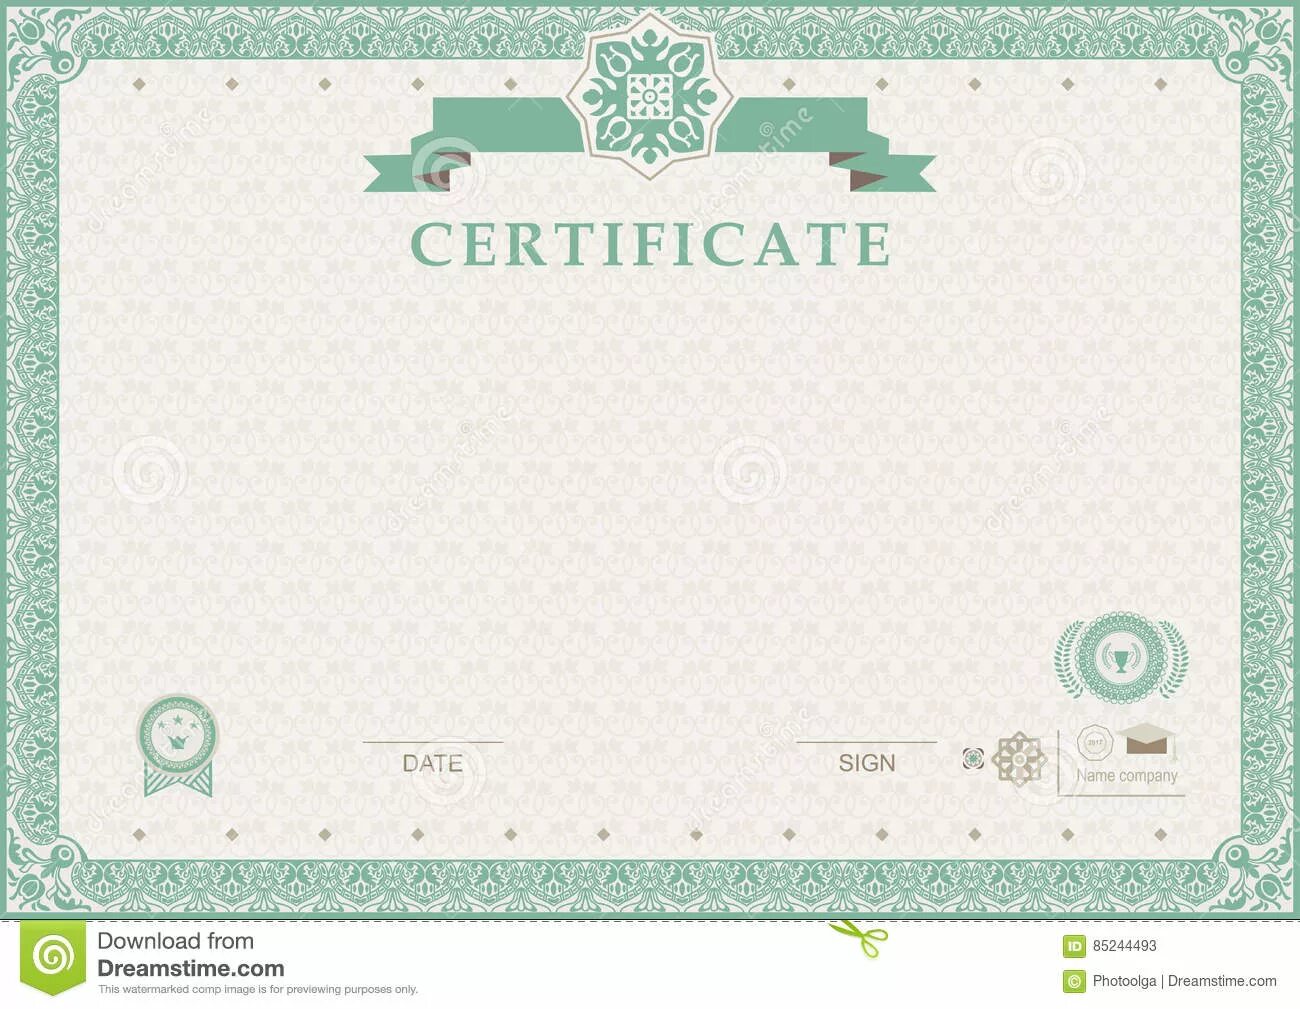 Сертификат шаблон зеленый. Рамка для сертификата зеленая. Рамка для сертификата зеленого цвета. Фон для сертификата зеленый.